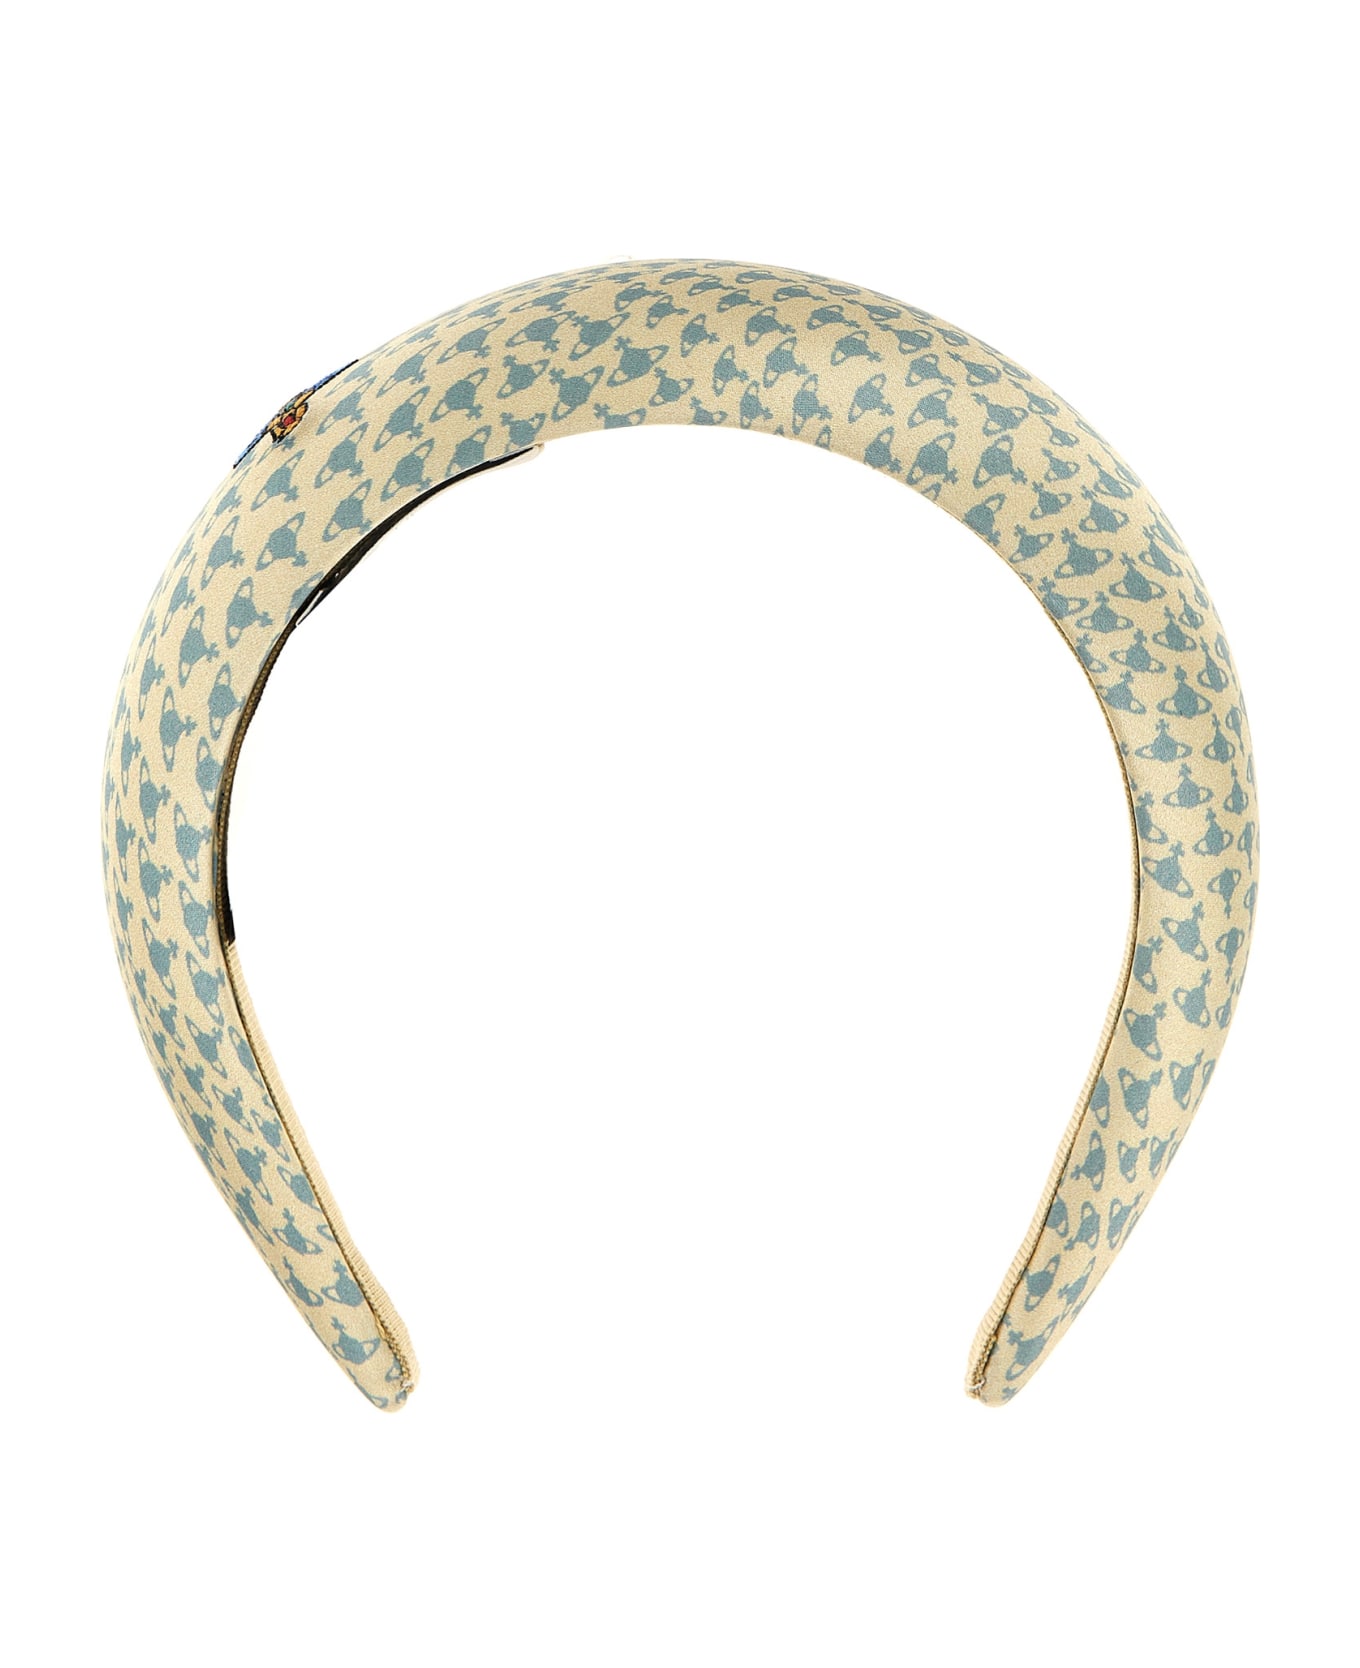 Vivienne Westwood Logo Print Headband - Multicolor